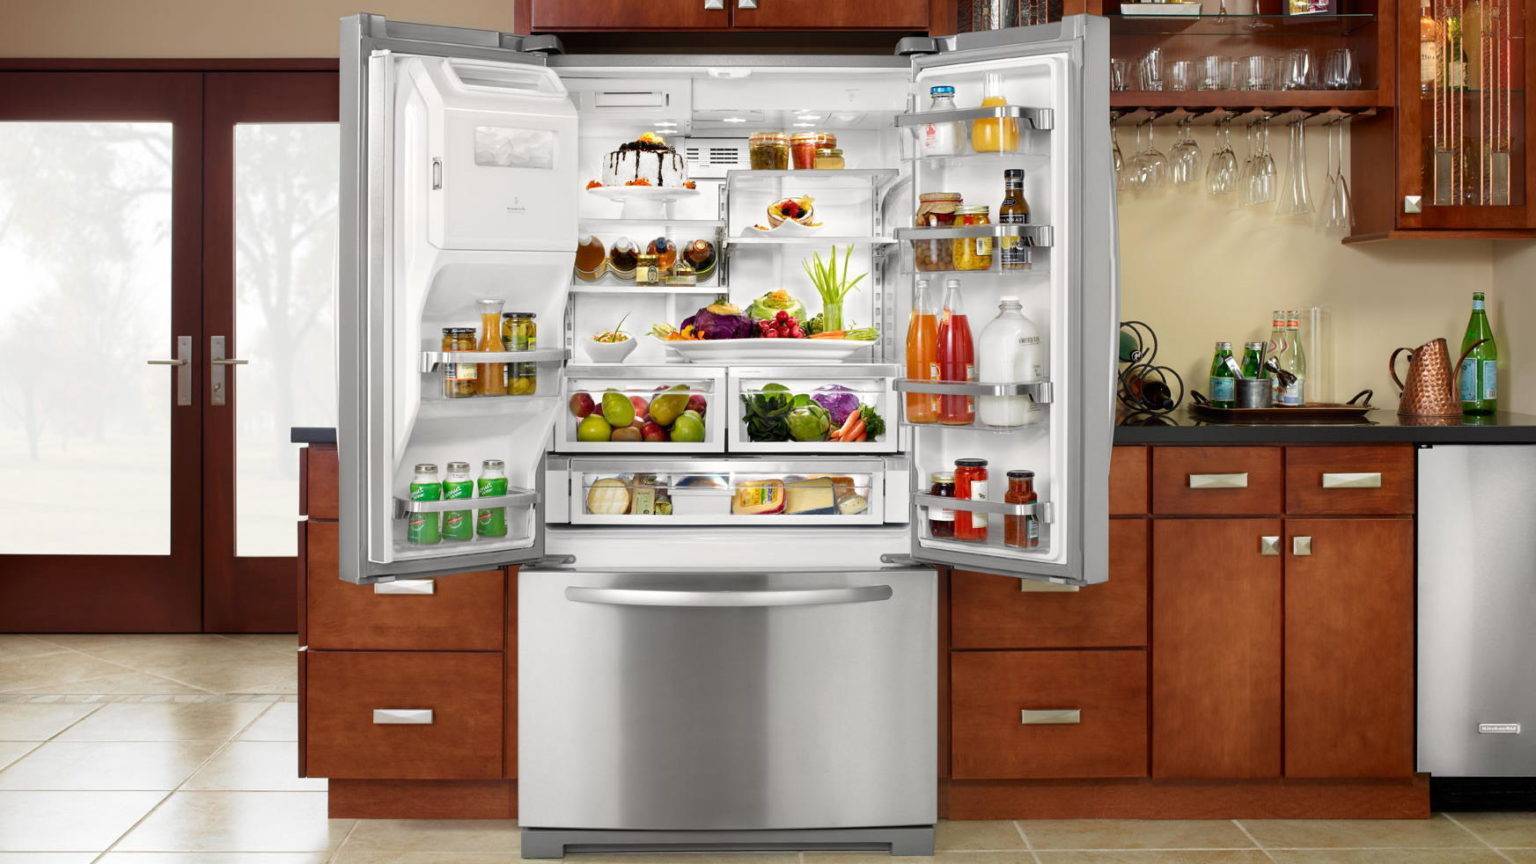 Холодильник. Холодильник широкий. Красивый холодильник. Холодильник на кухне. Какие холодильники лучше по качеству